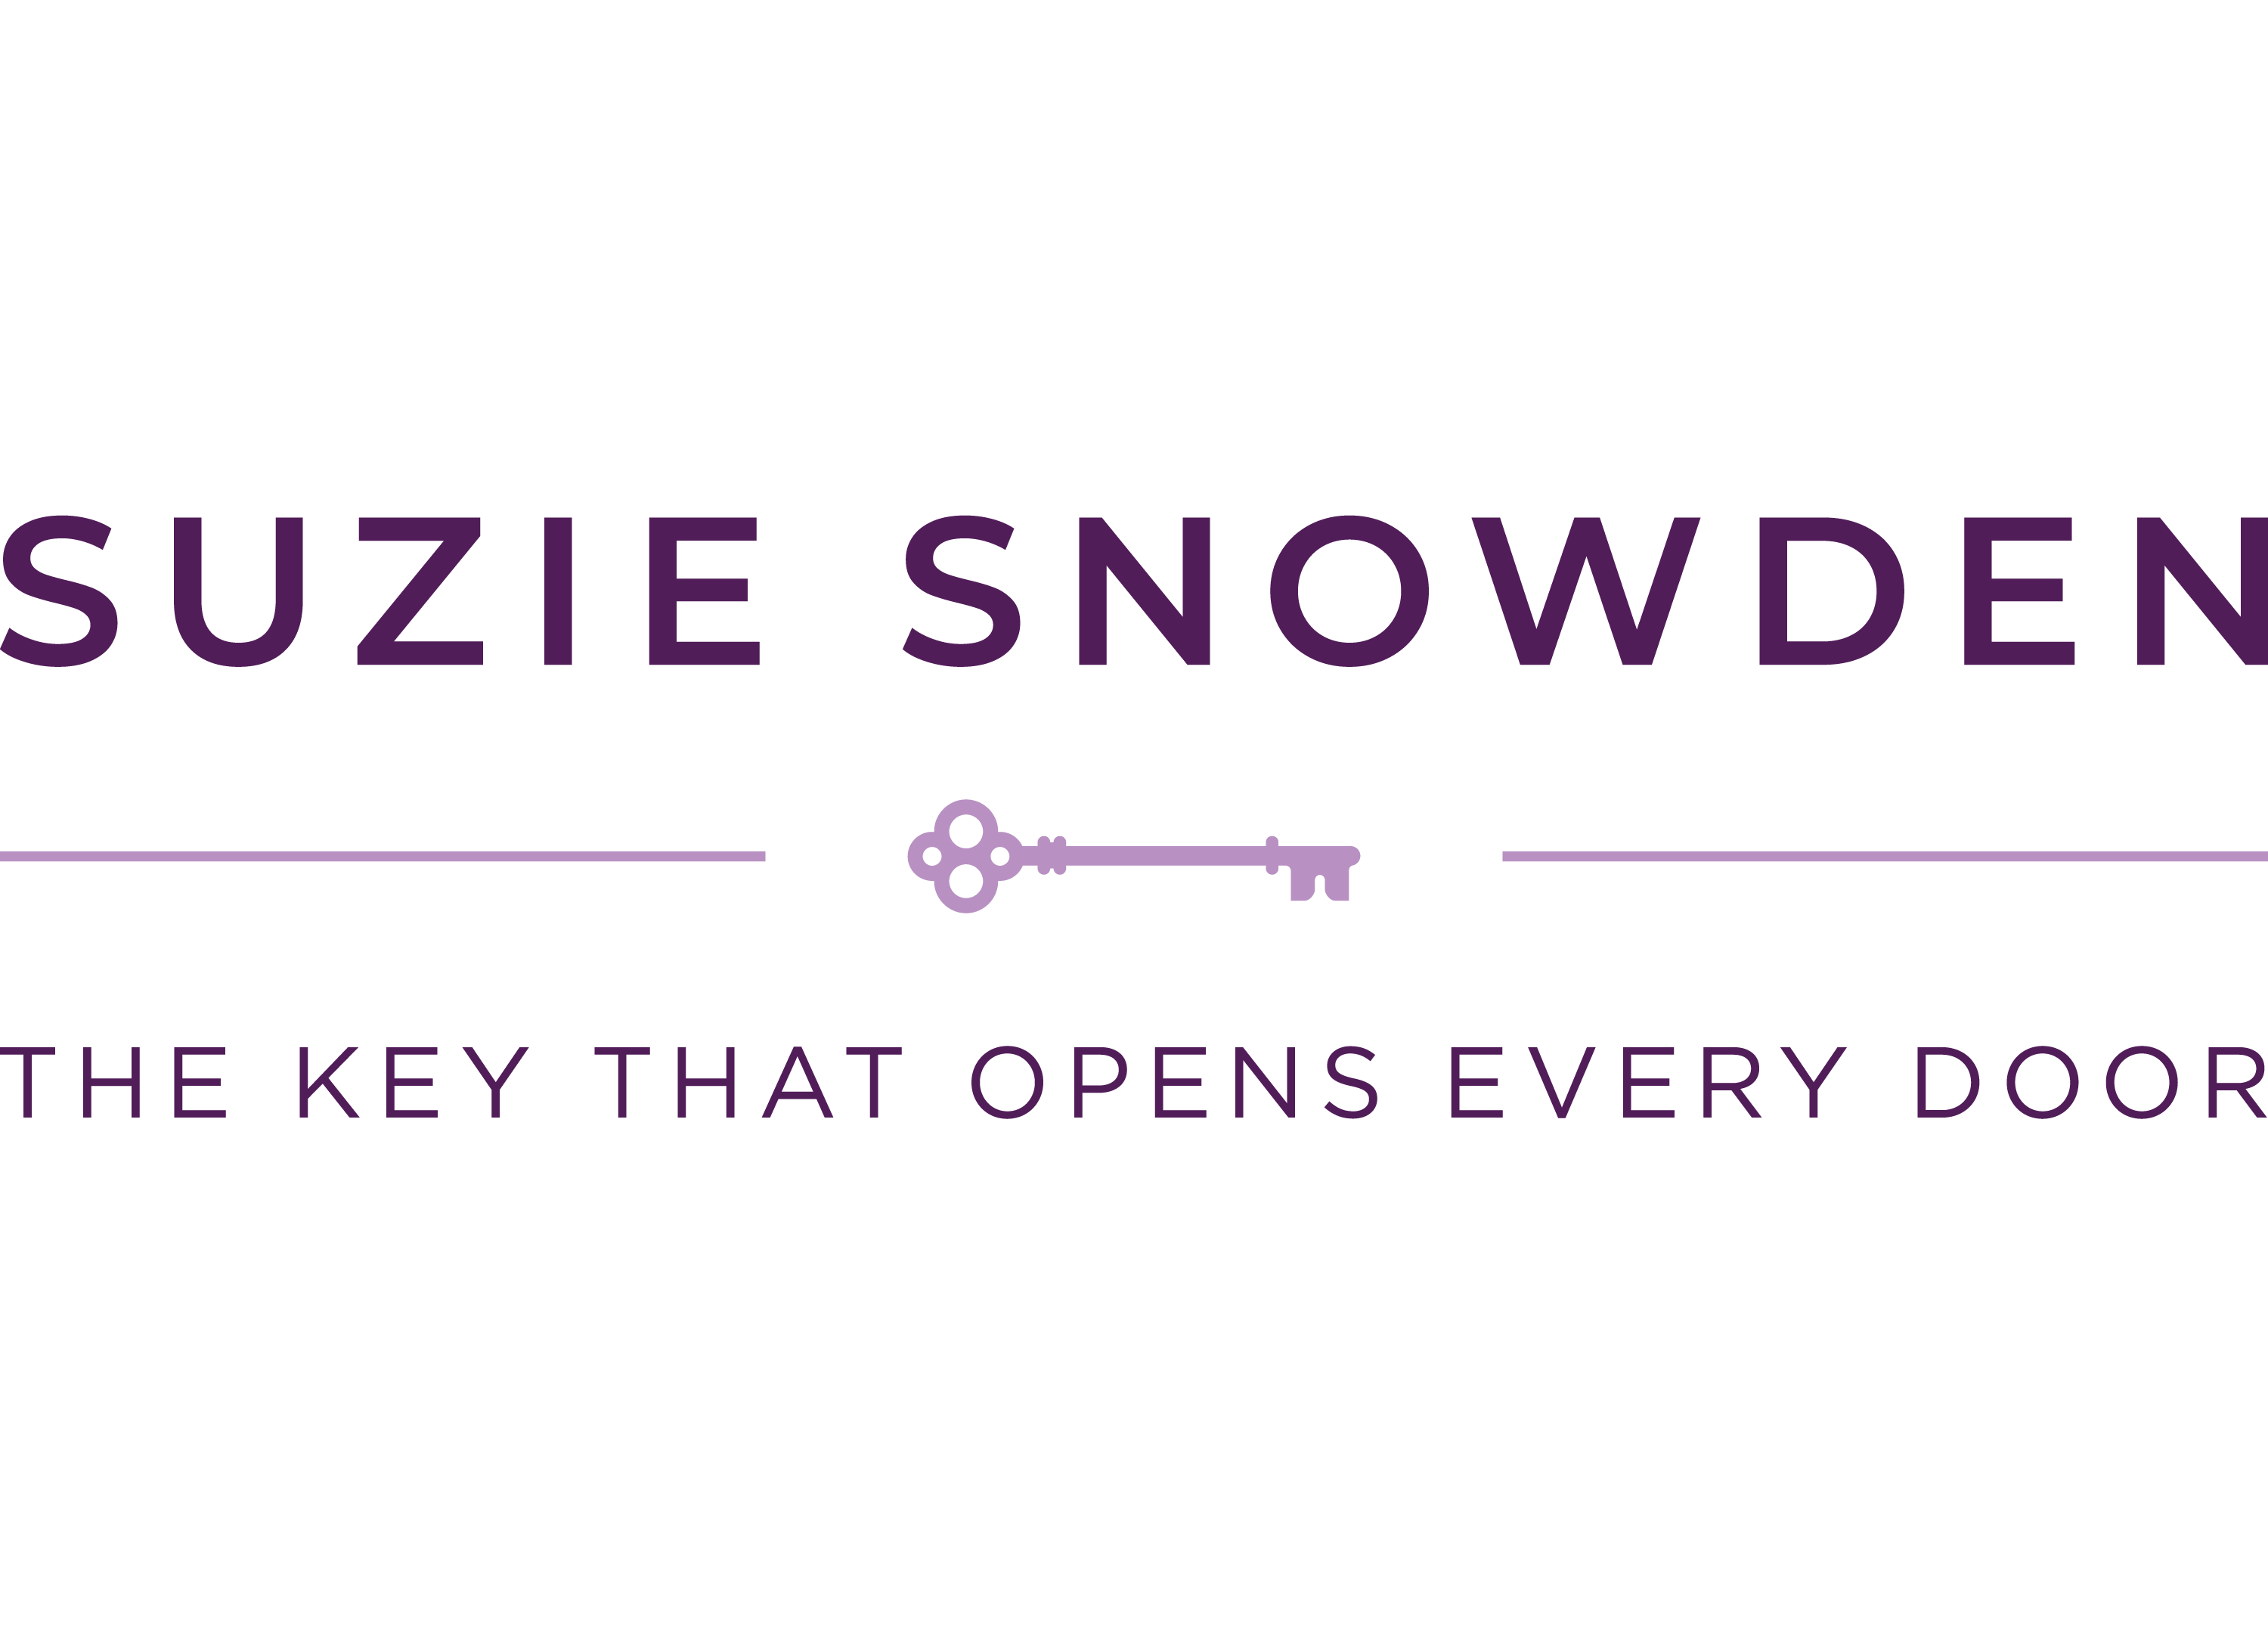 Suzie Logo